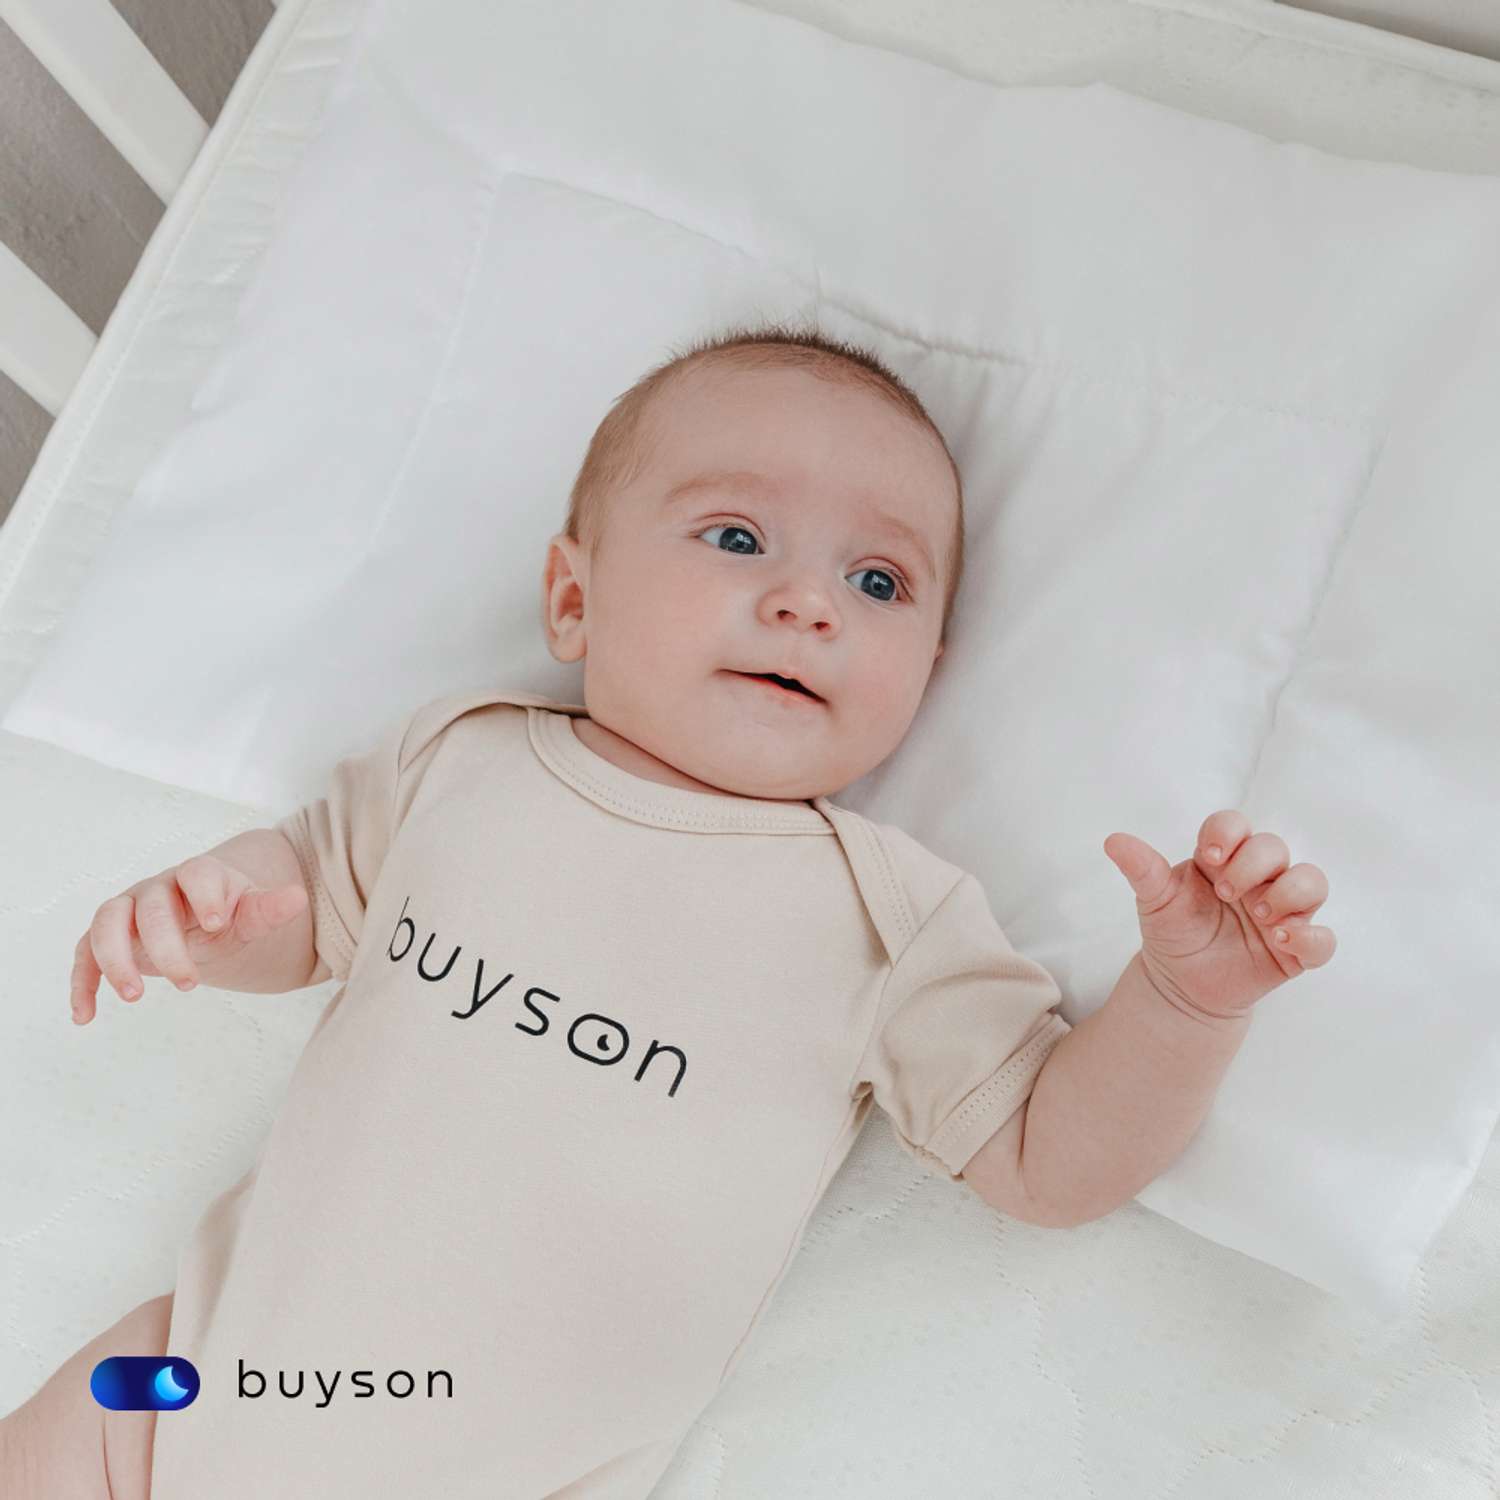 Анатомическая подушка buyson BuyMini для новорожденных от 0 до 3 лет 35х55 см высота 3 см - фото 11